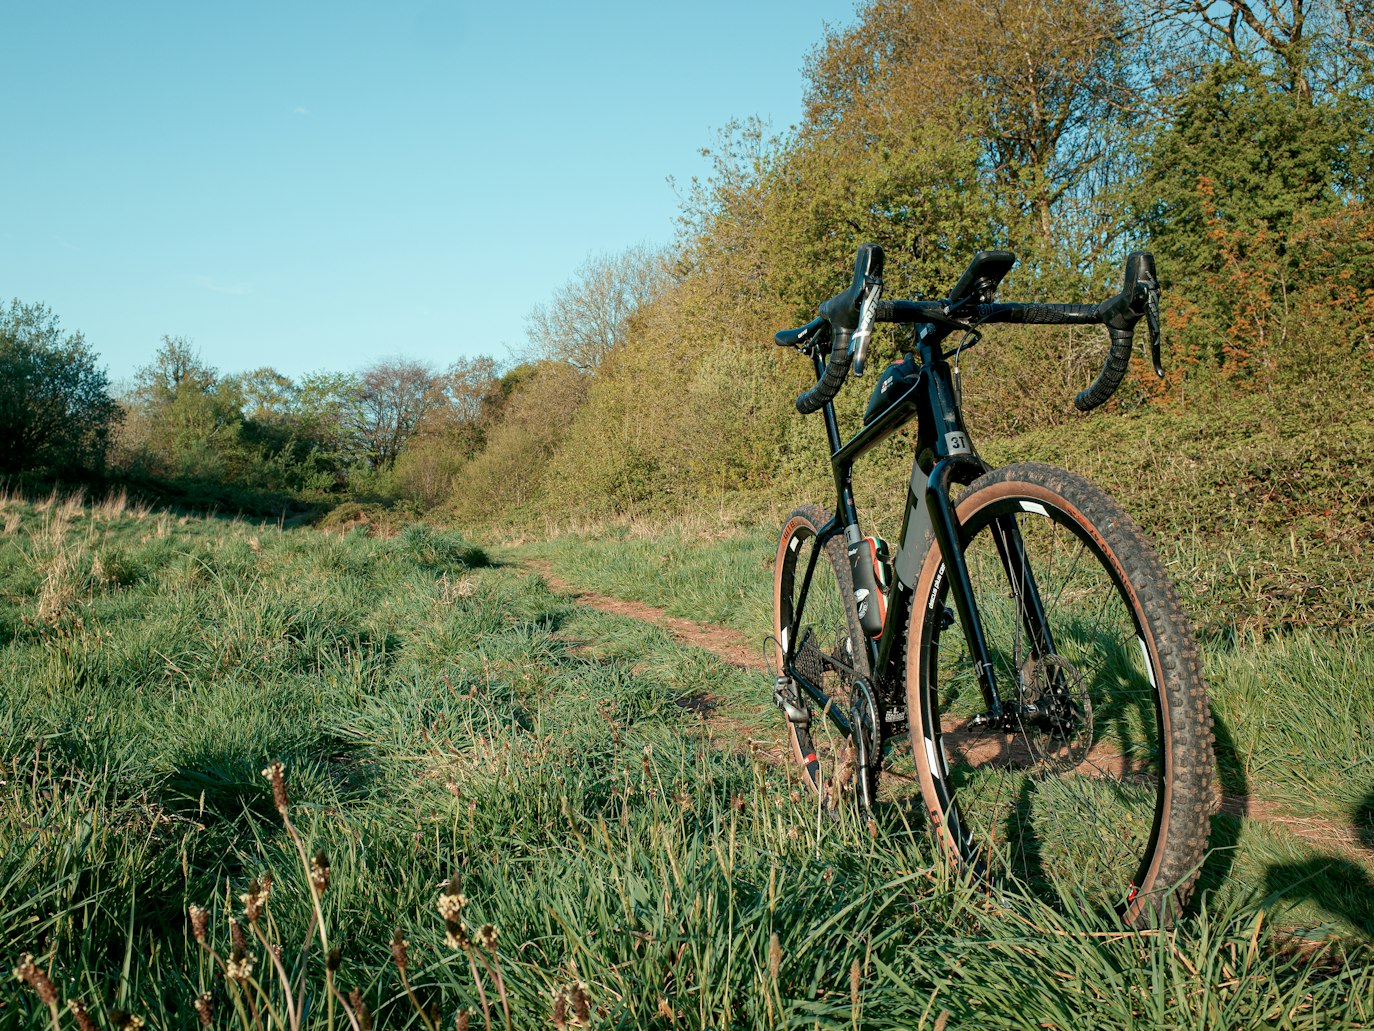 Modern gravel bike in a field